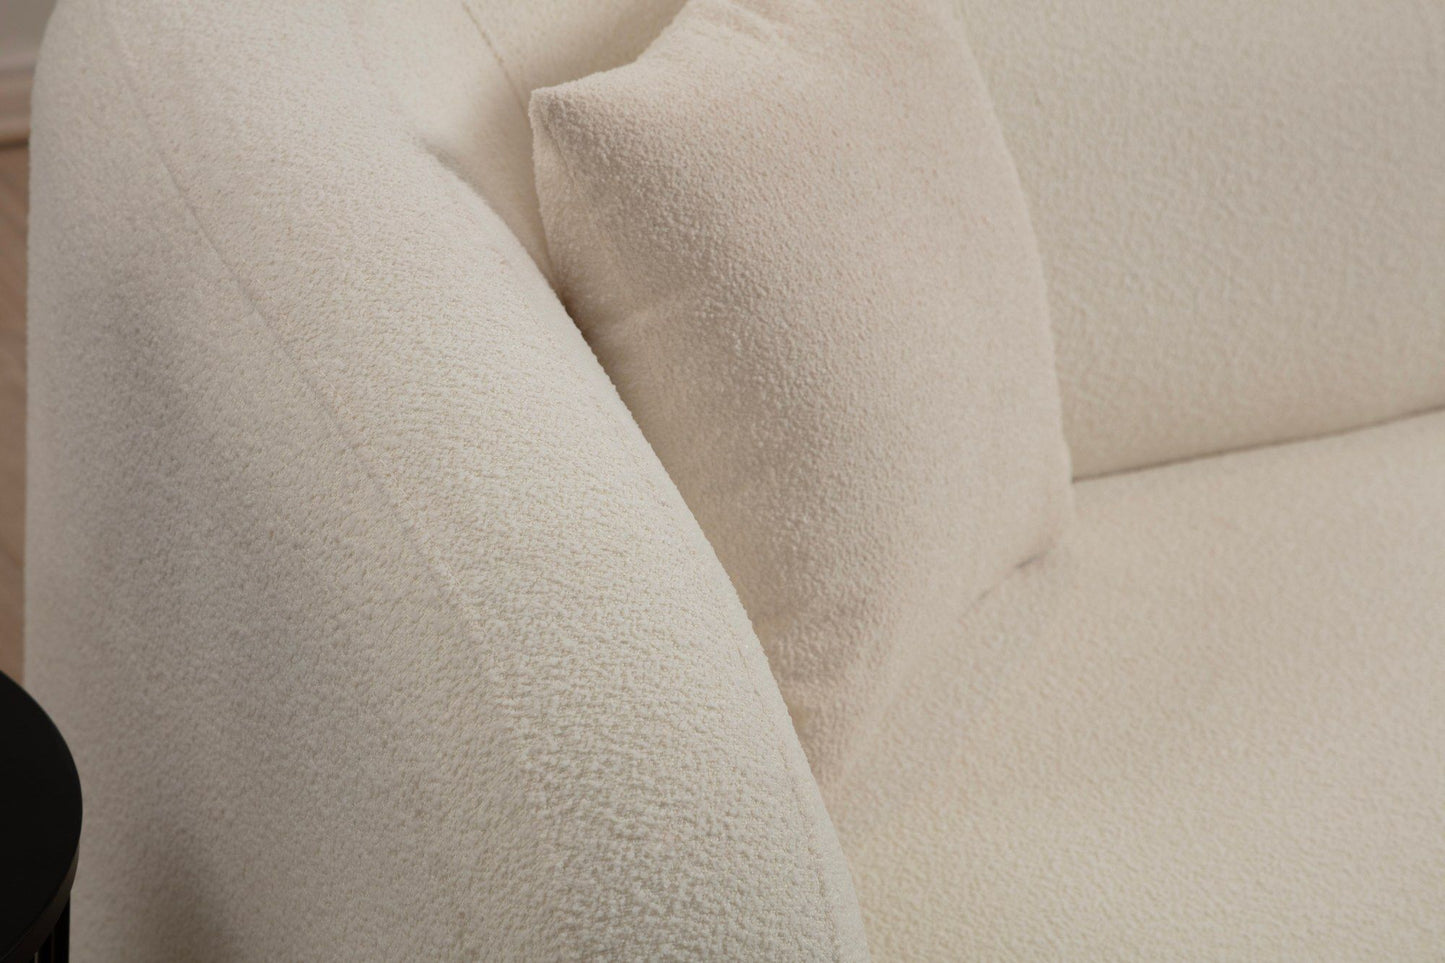 Asos Cream - 2 - 2-Seat Sofa